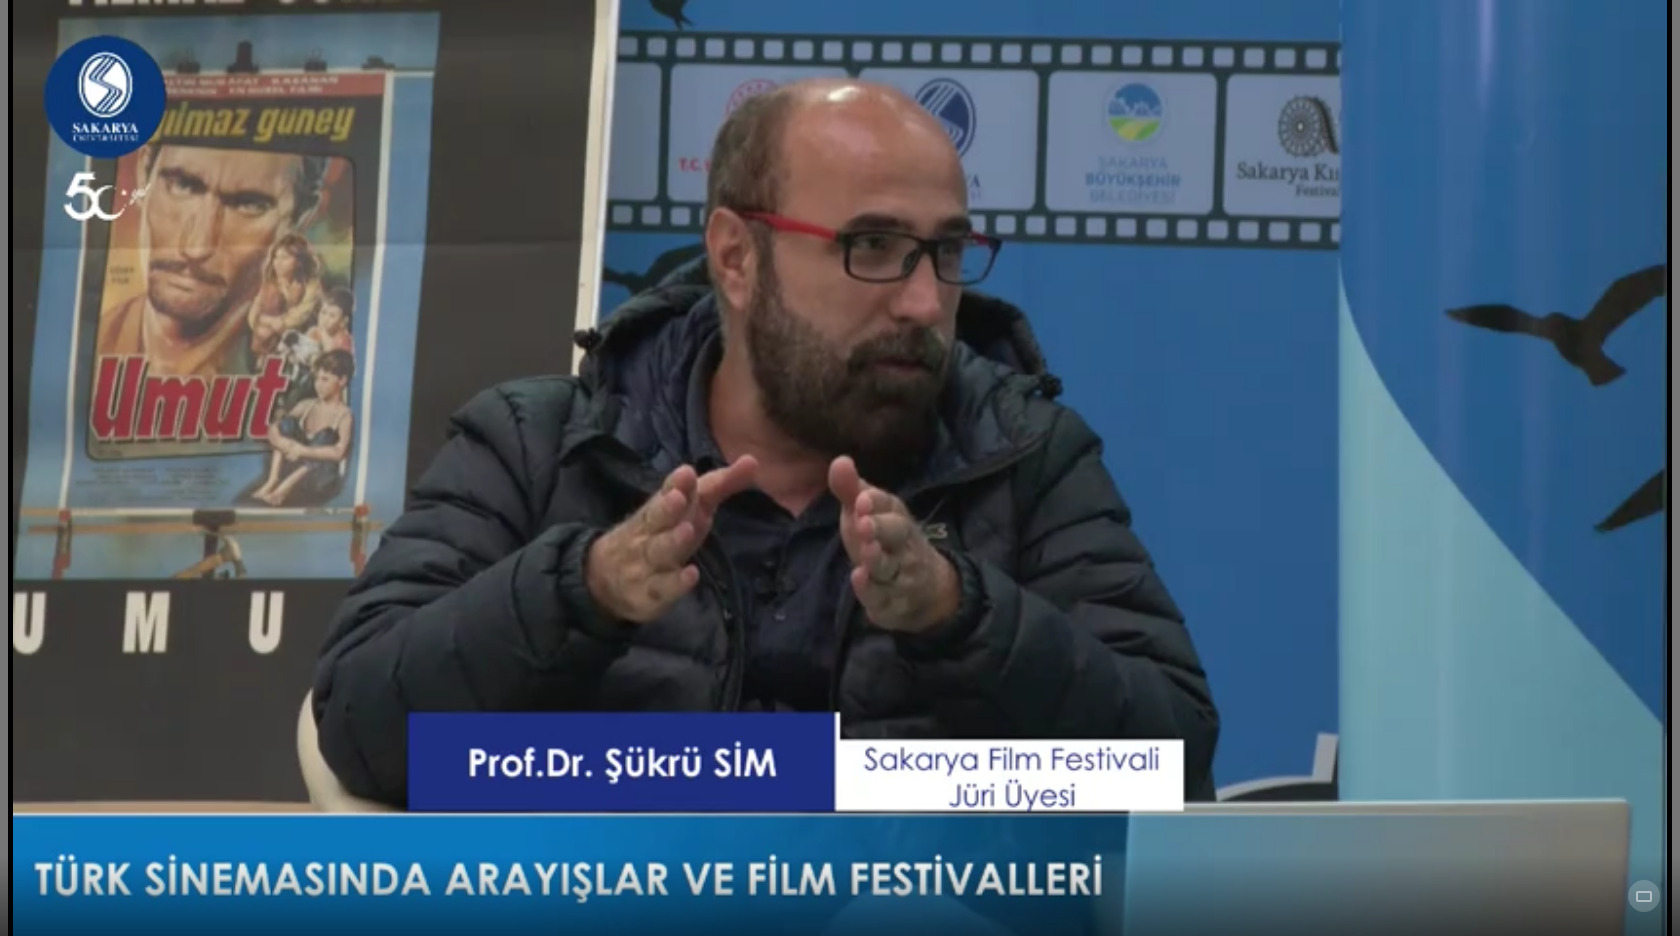 Prof. Dr. Şükrü Sim: “Kısa Film Türk Sinemasının Geleceğidir”